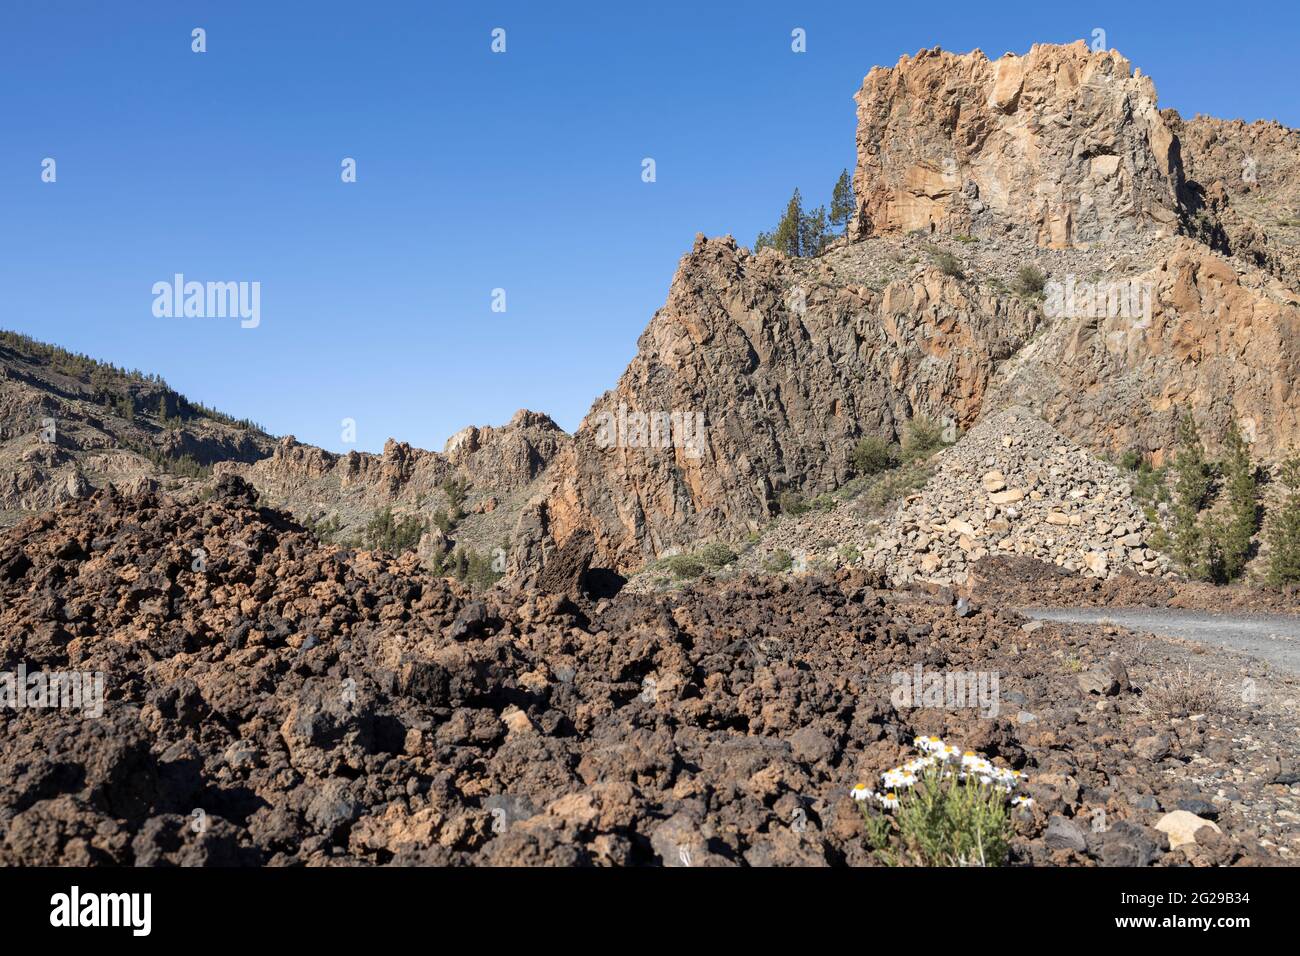 Il flusso lavico solidificato e le enormi pareti rocciose nel paesaggio vulcanico del Parco Nazionale Las Canadas del Teide, Tenerife, Isole Canarie, Spagna Foto Stock